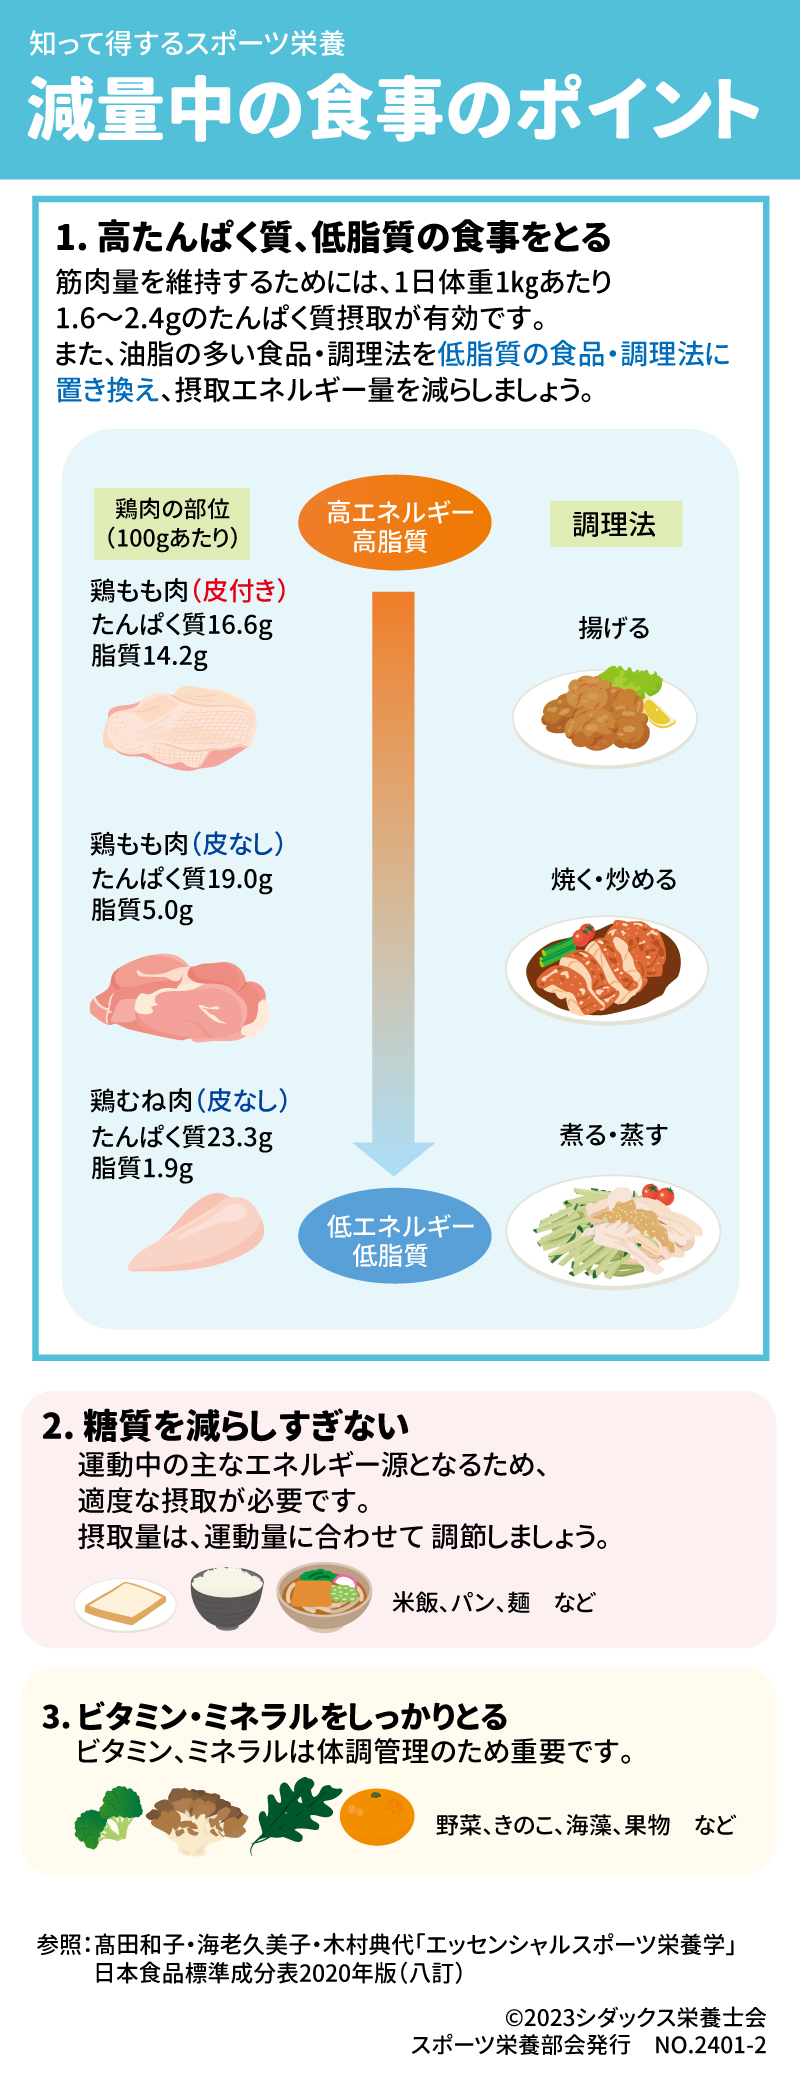 減量中の食事のポイント 1. 高たんぱく質、低脂質の食事をとる 筋肉量を維持するためには、1日体重1㎏あたり1.6～2.4gのたんぱく質摂取が有効です。また、油脂の多い食品・調理法を低脂質の食品・調理法に置き換え、摂取エネルギー量を減らしましょう。 鶏肉の部位（100gあたり） 鶏もも肉（皮付き） 鶏もも肉（皮なし） 鶏むね肉（皮なし） たんぱく質 脂質 高エネルギー高脂質  低エネルギー低脂質 調理法 揚げる 焼く・炒める 煮る・蒸す 2. 糖質を減らしすぎない 運動中の主なエネルギー源となるため、適度な摂取が必要です。摂取量は、運動量に合わせて 調節しましょう。 米飯、パン、麺　など 3. ビタミン・ミネラルをしっかりとる ビタミン、ミネラルは体調管理のため重要です。 野菜、きのこ、海藻、果物　など